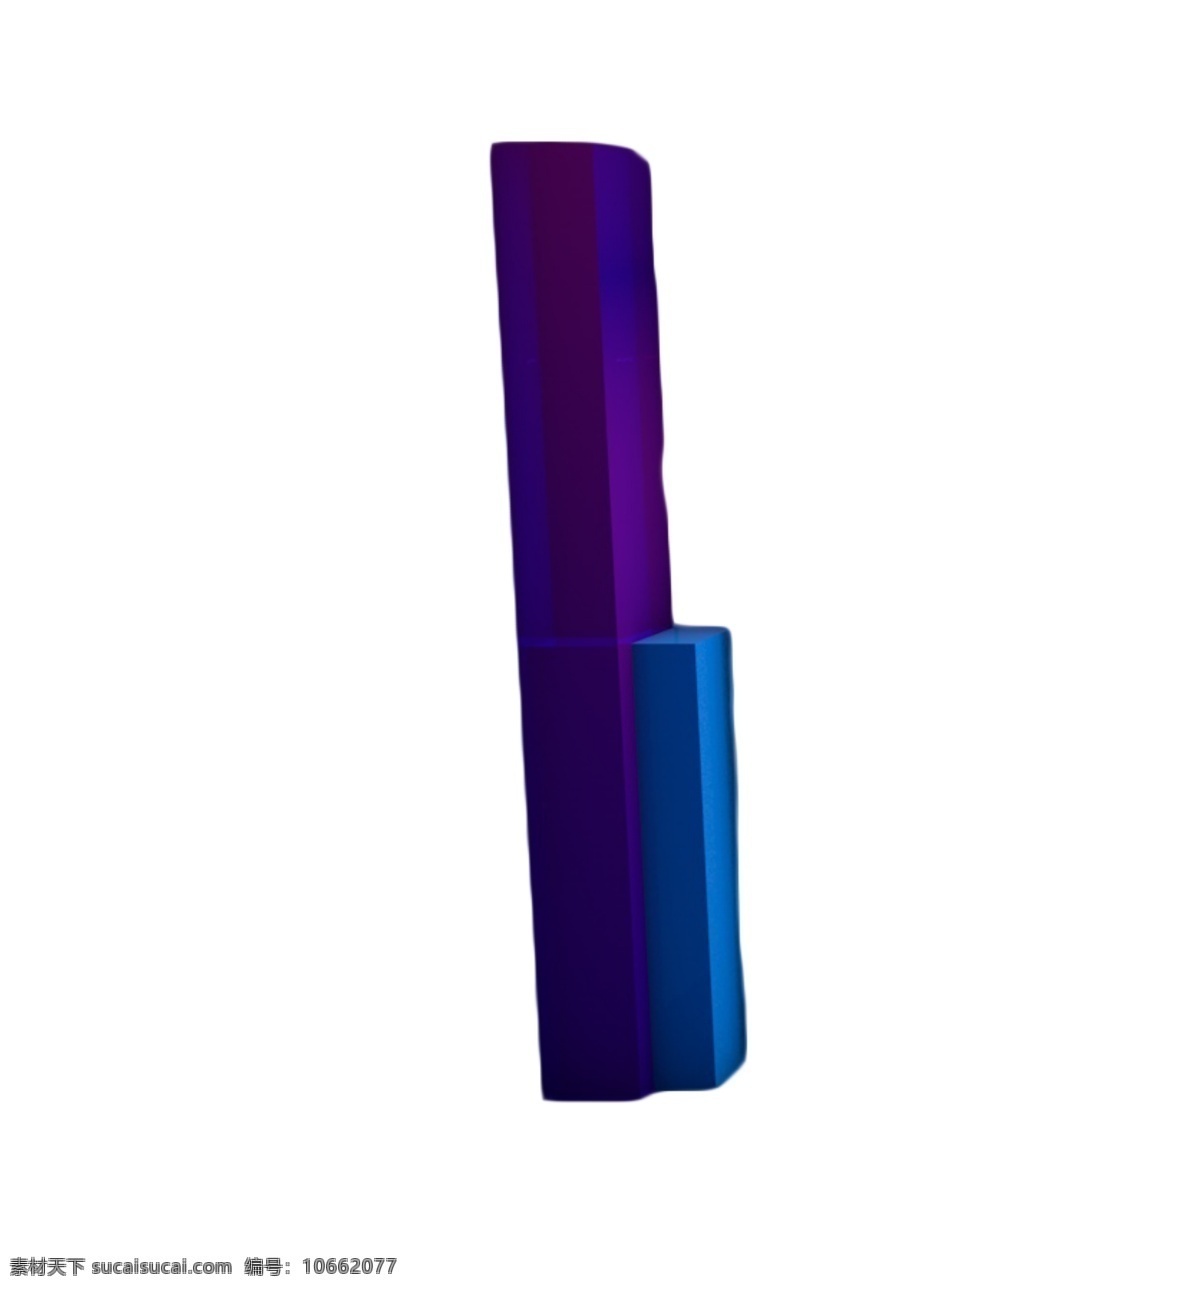 长方体音箱 物体 长方体 紫色